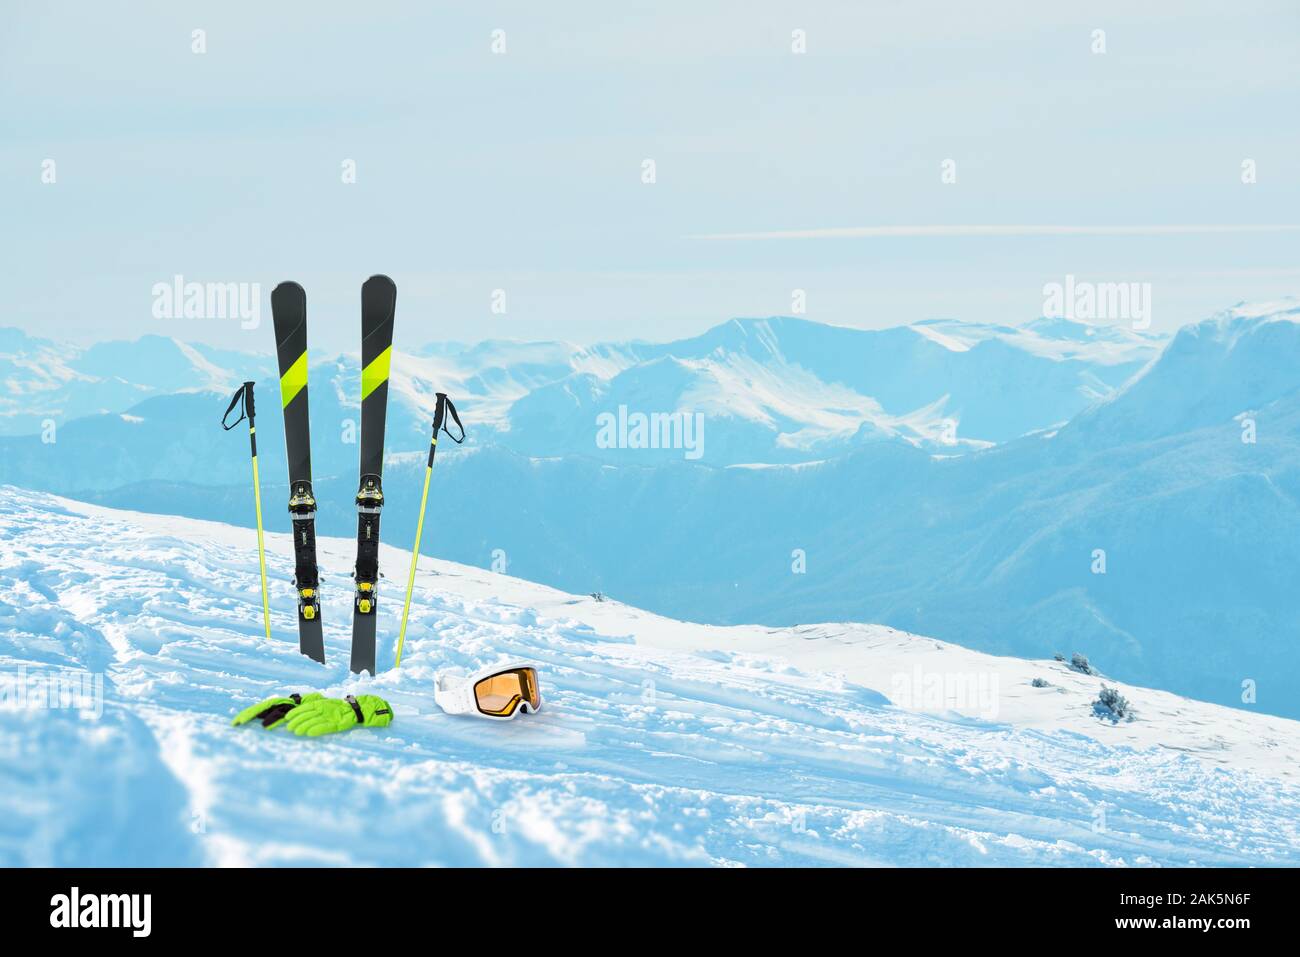 El equipo de esquí en la nieve. Estación de esquí y picos de montañas en el fondo es un . El concepto de vacaciones de invierno y los deportes de invierno Foto de stock